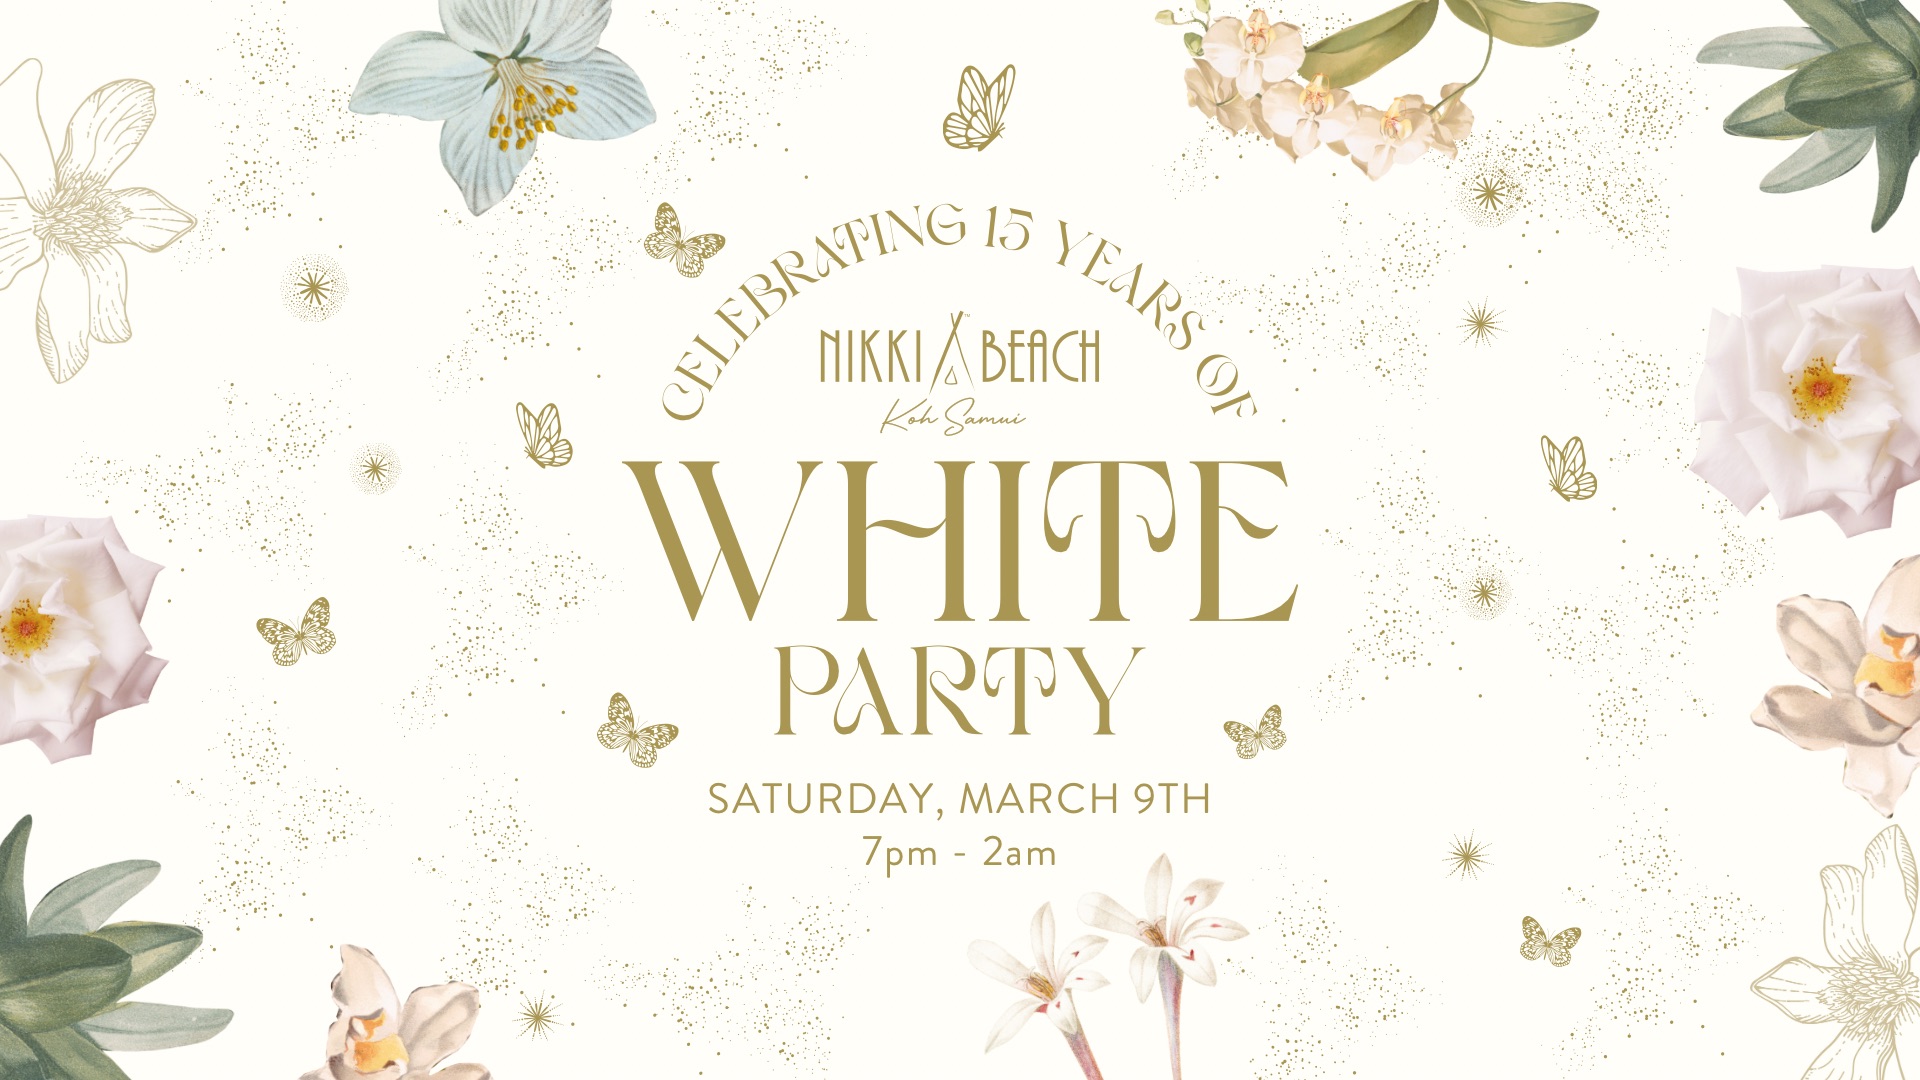 White Party – Świętujemy 15-lecie Nikki Beach na Koh Samui